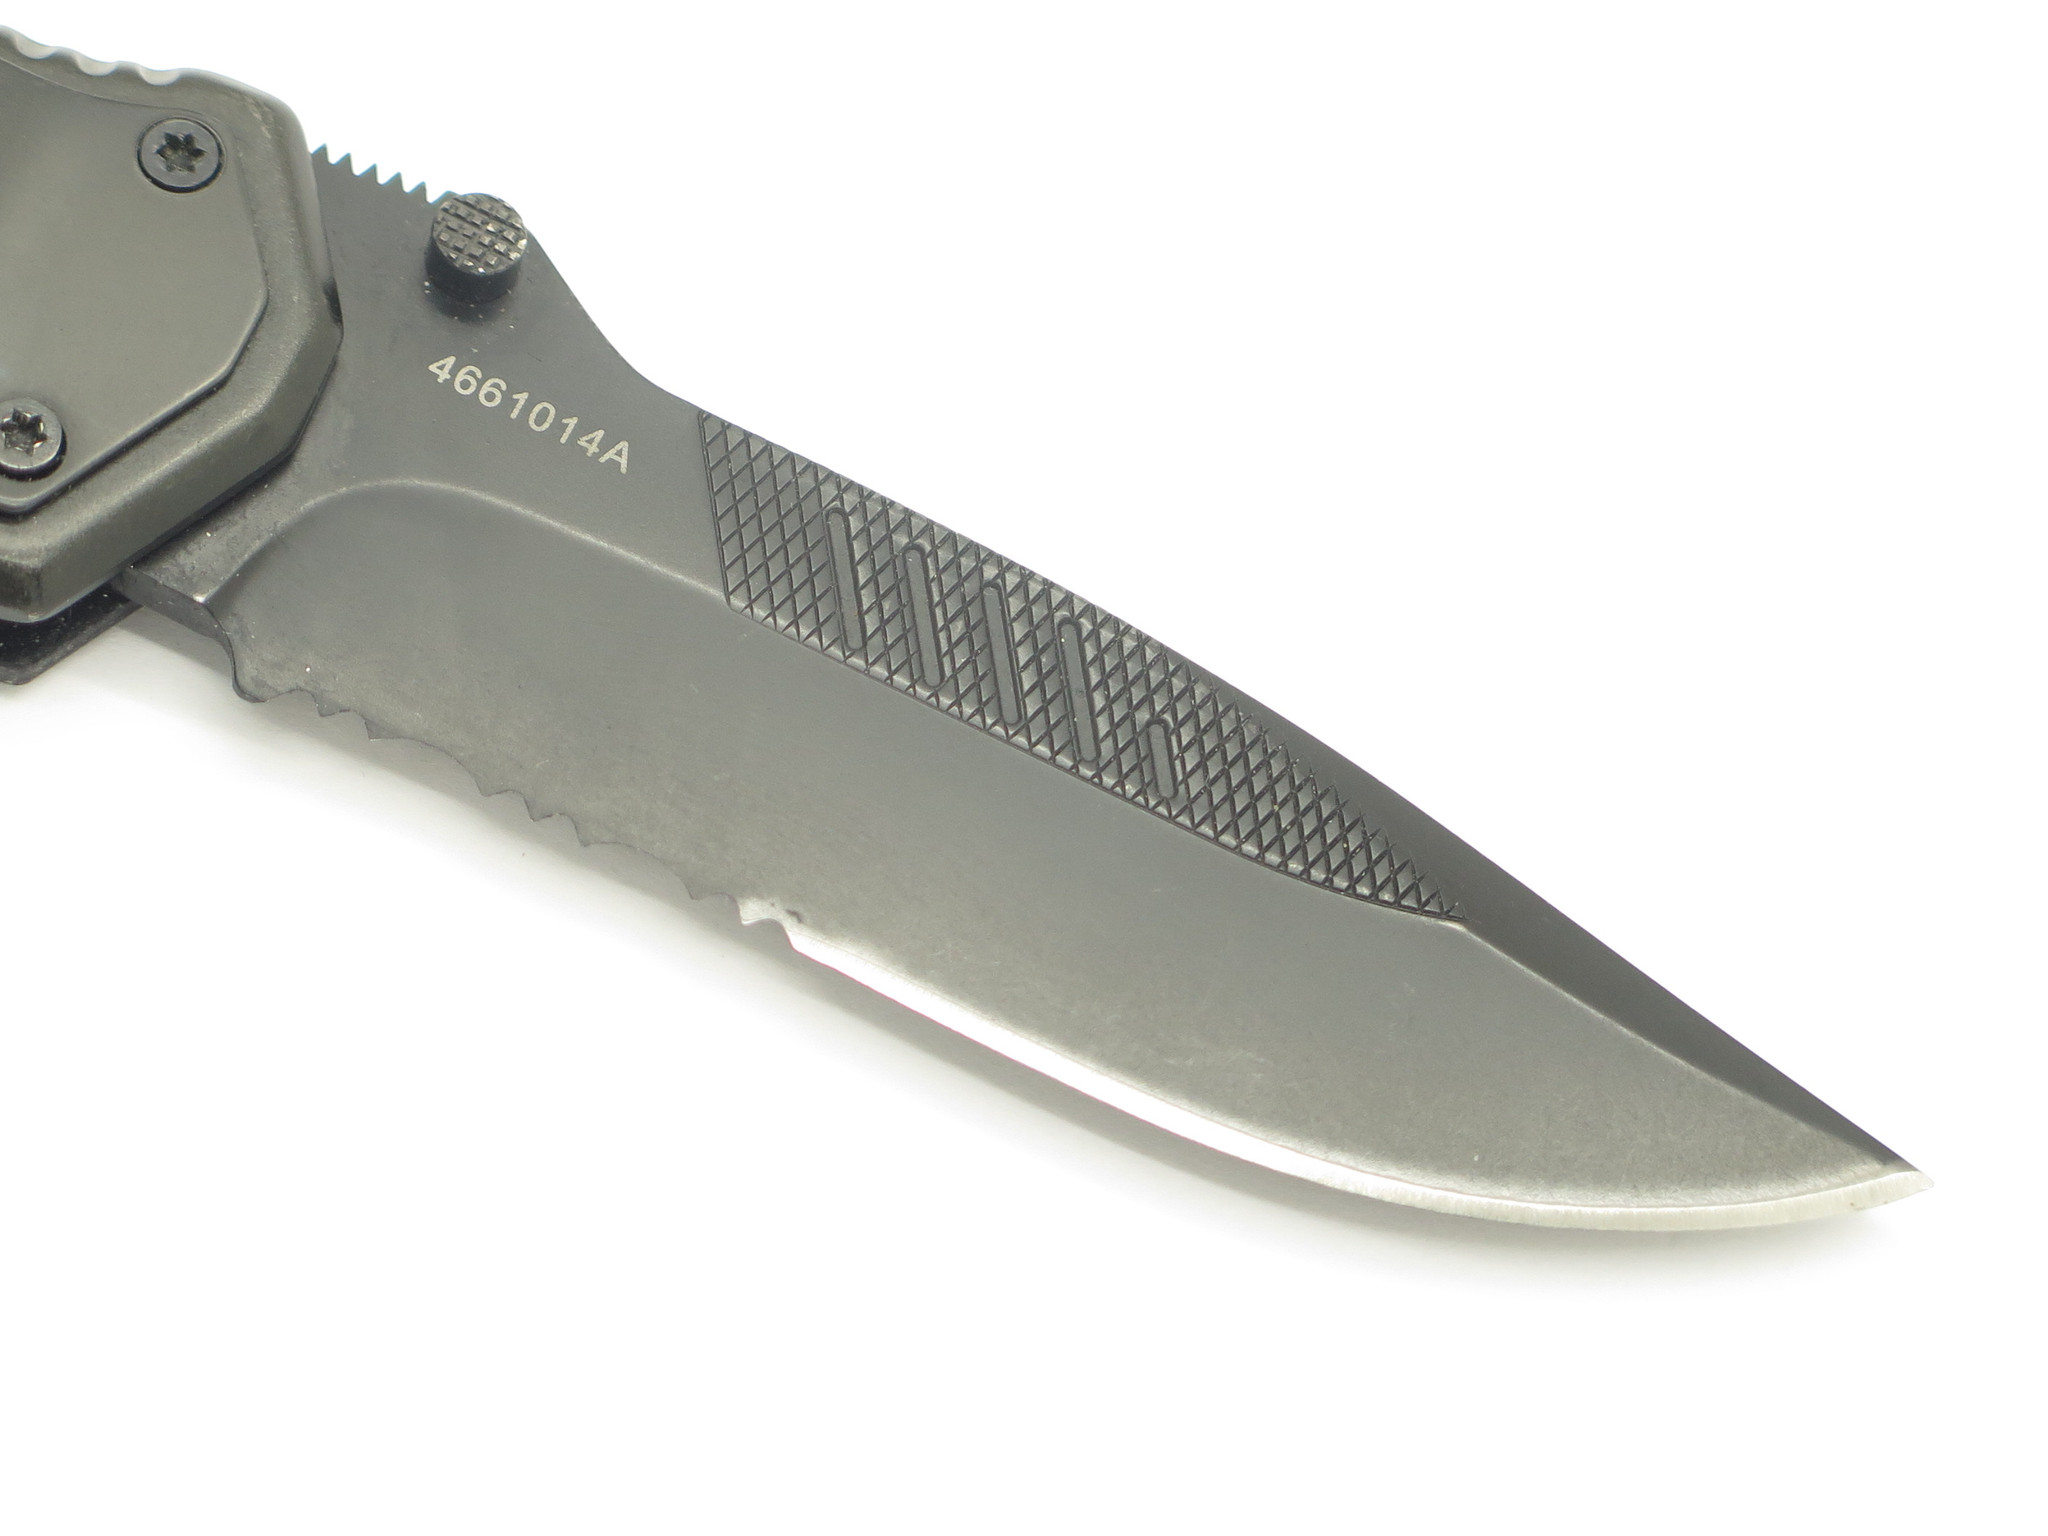 gerber tactical folding knives